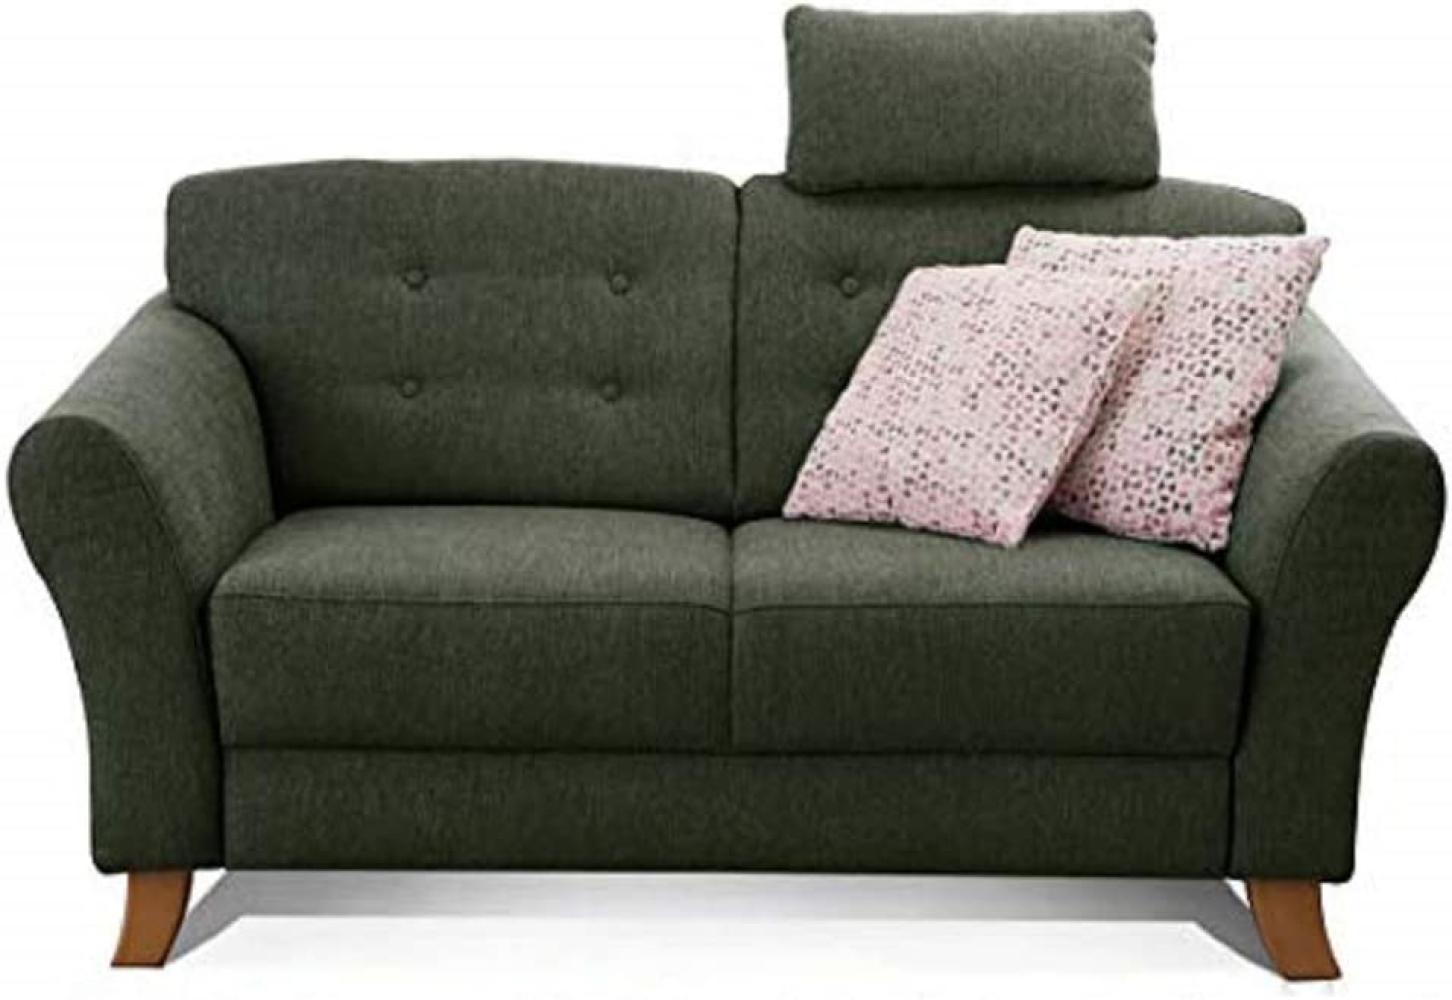 Cavadore 2-Sitzer-Sofa / Moderne Couch im Landhausstil mit Knopfeinzug im Rücken / Federkern / Inkl. Kopfstütze / 163 x 89 x 90 / Flachgewebe grün Bild 1